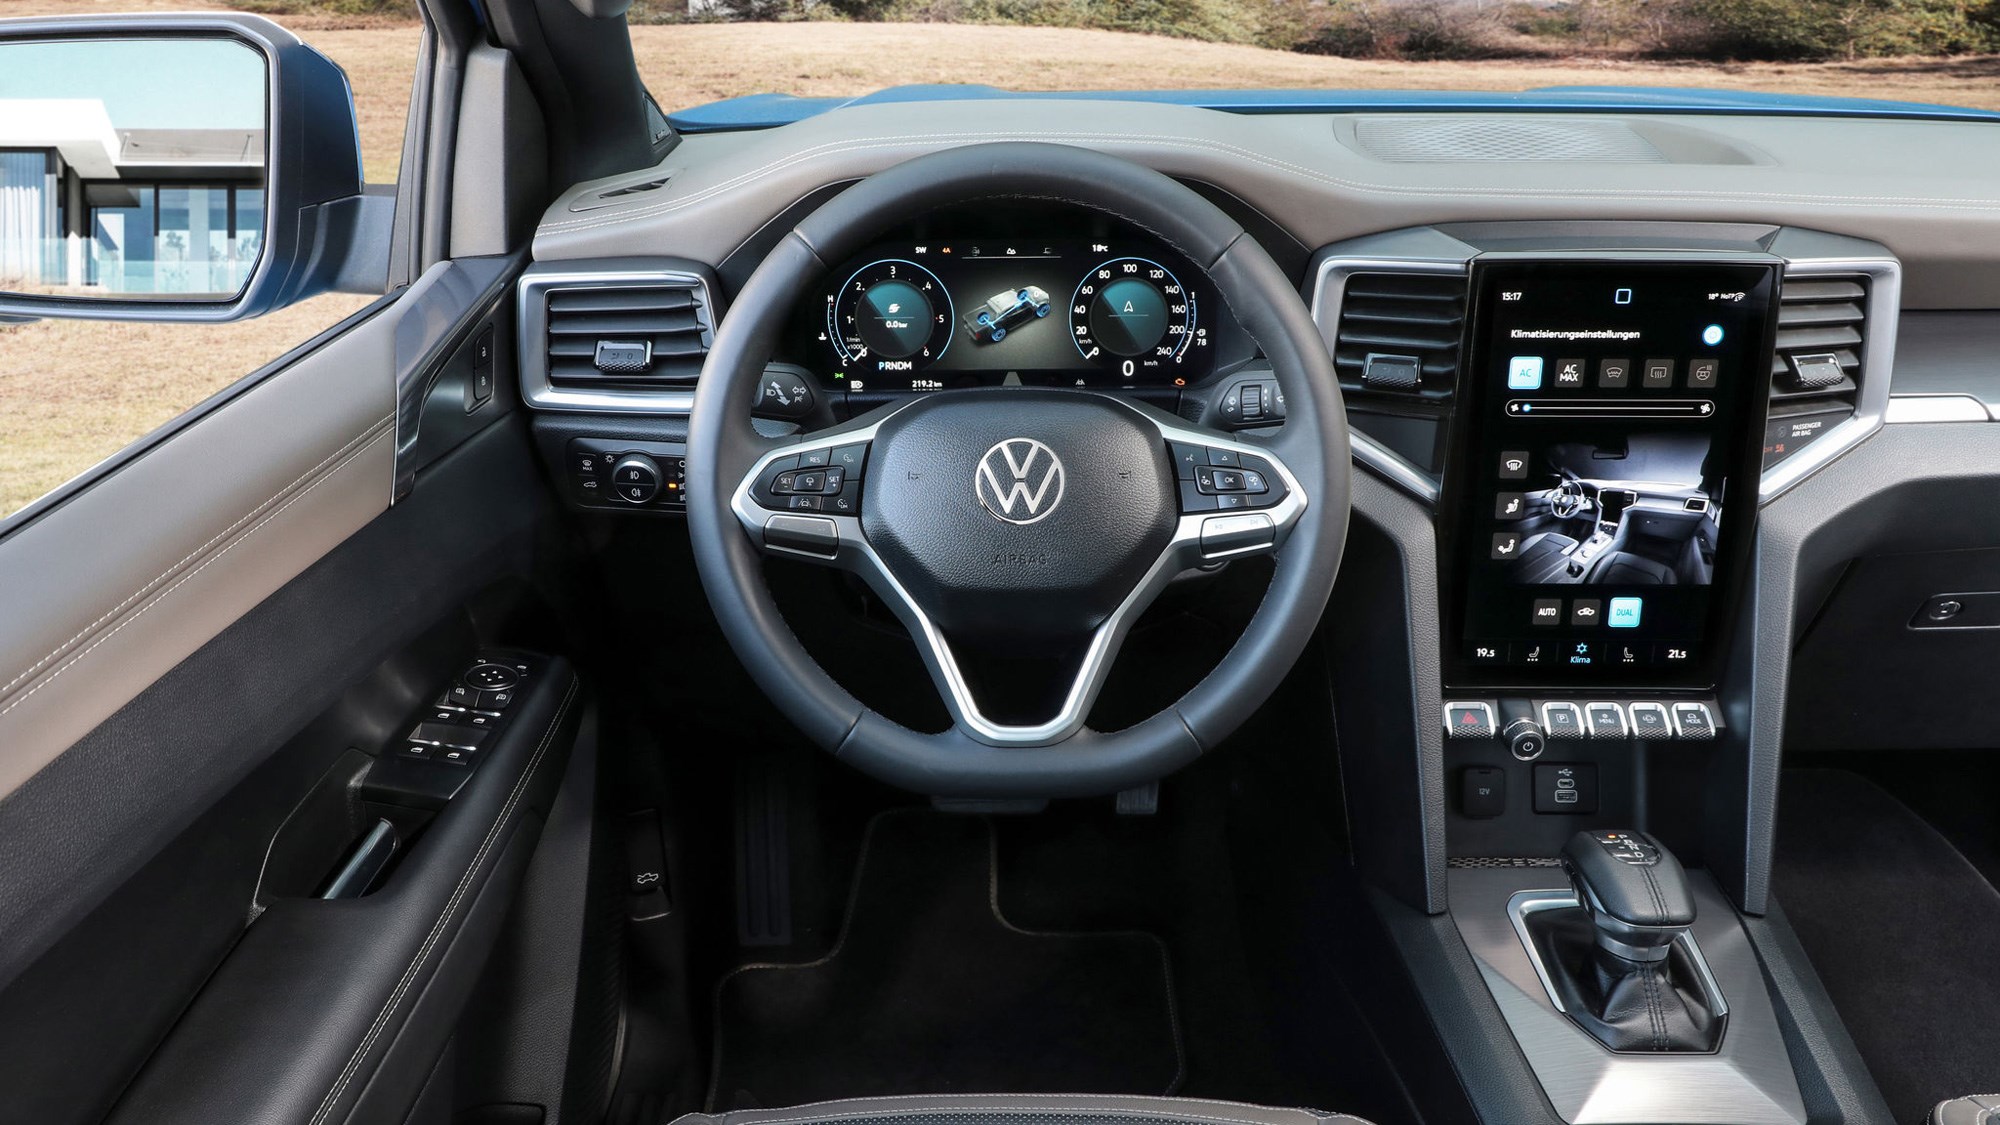 All-new VW Amarok priced from £33k + VAT